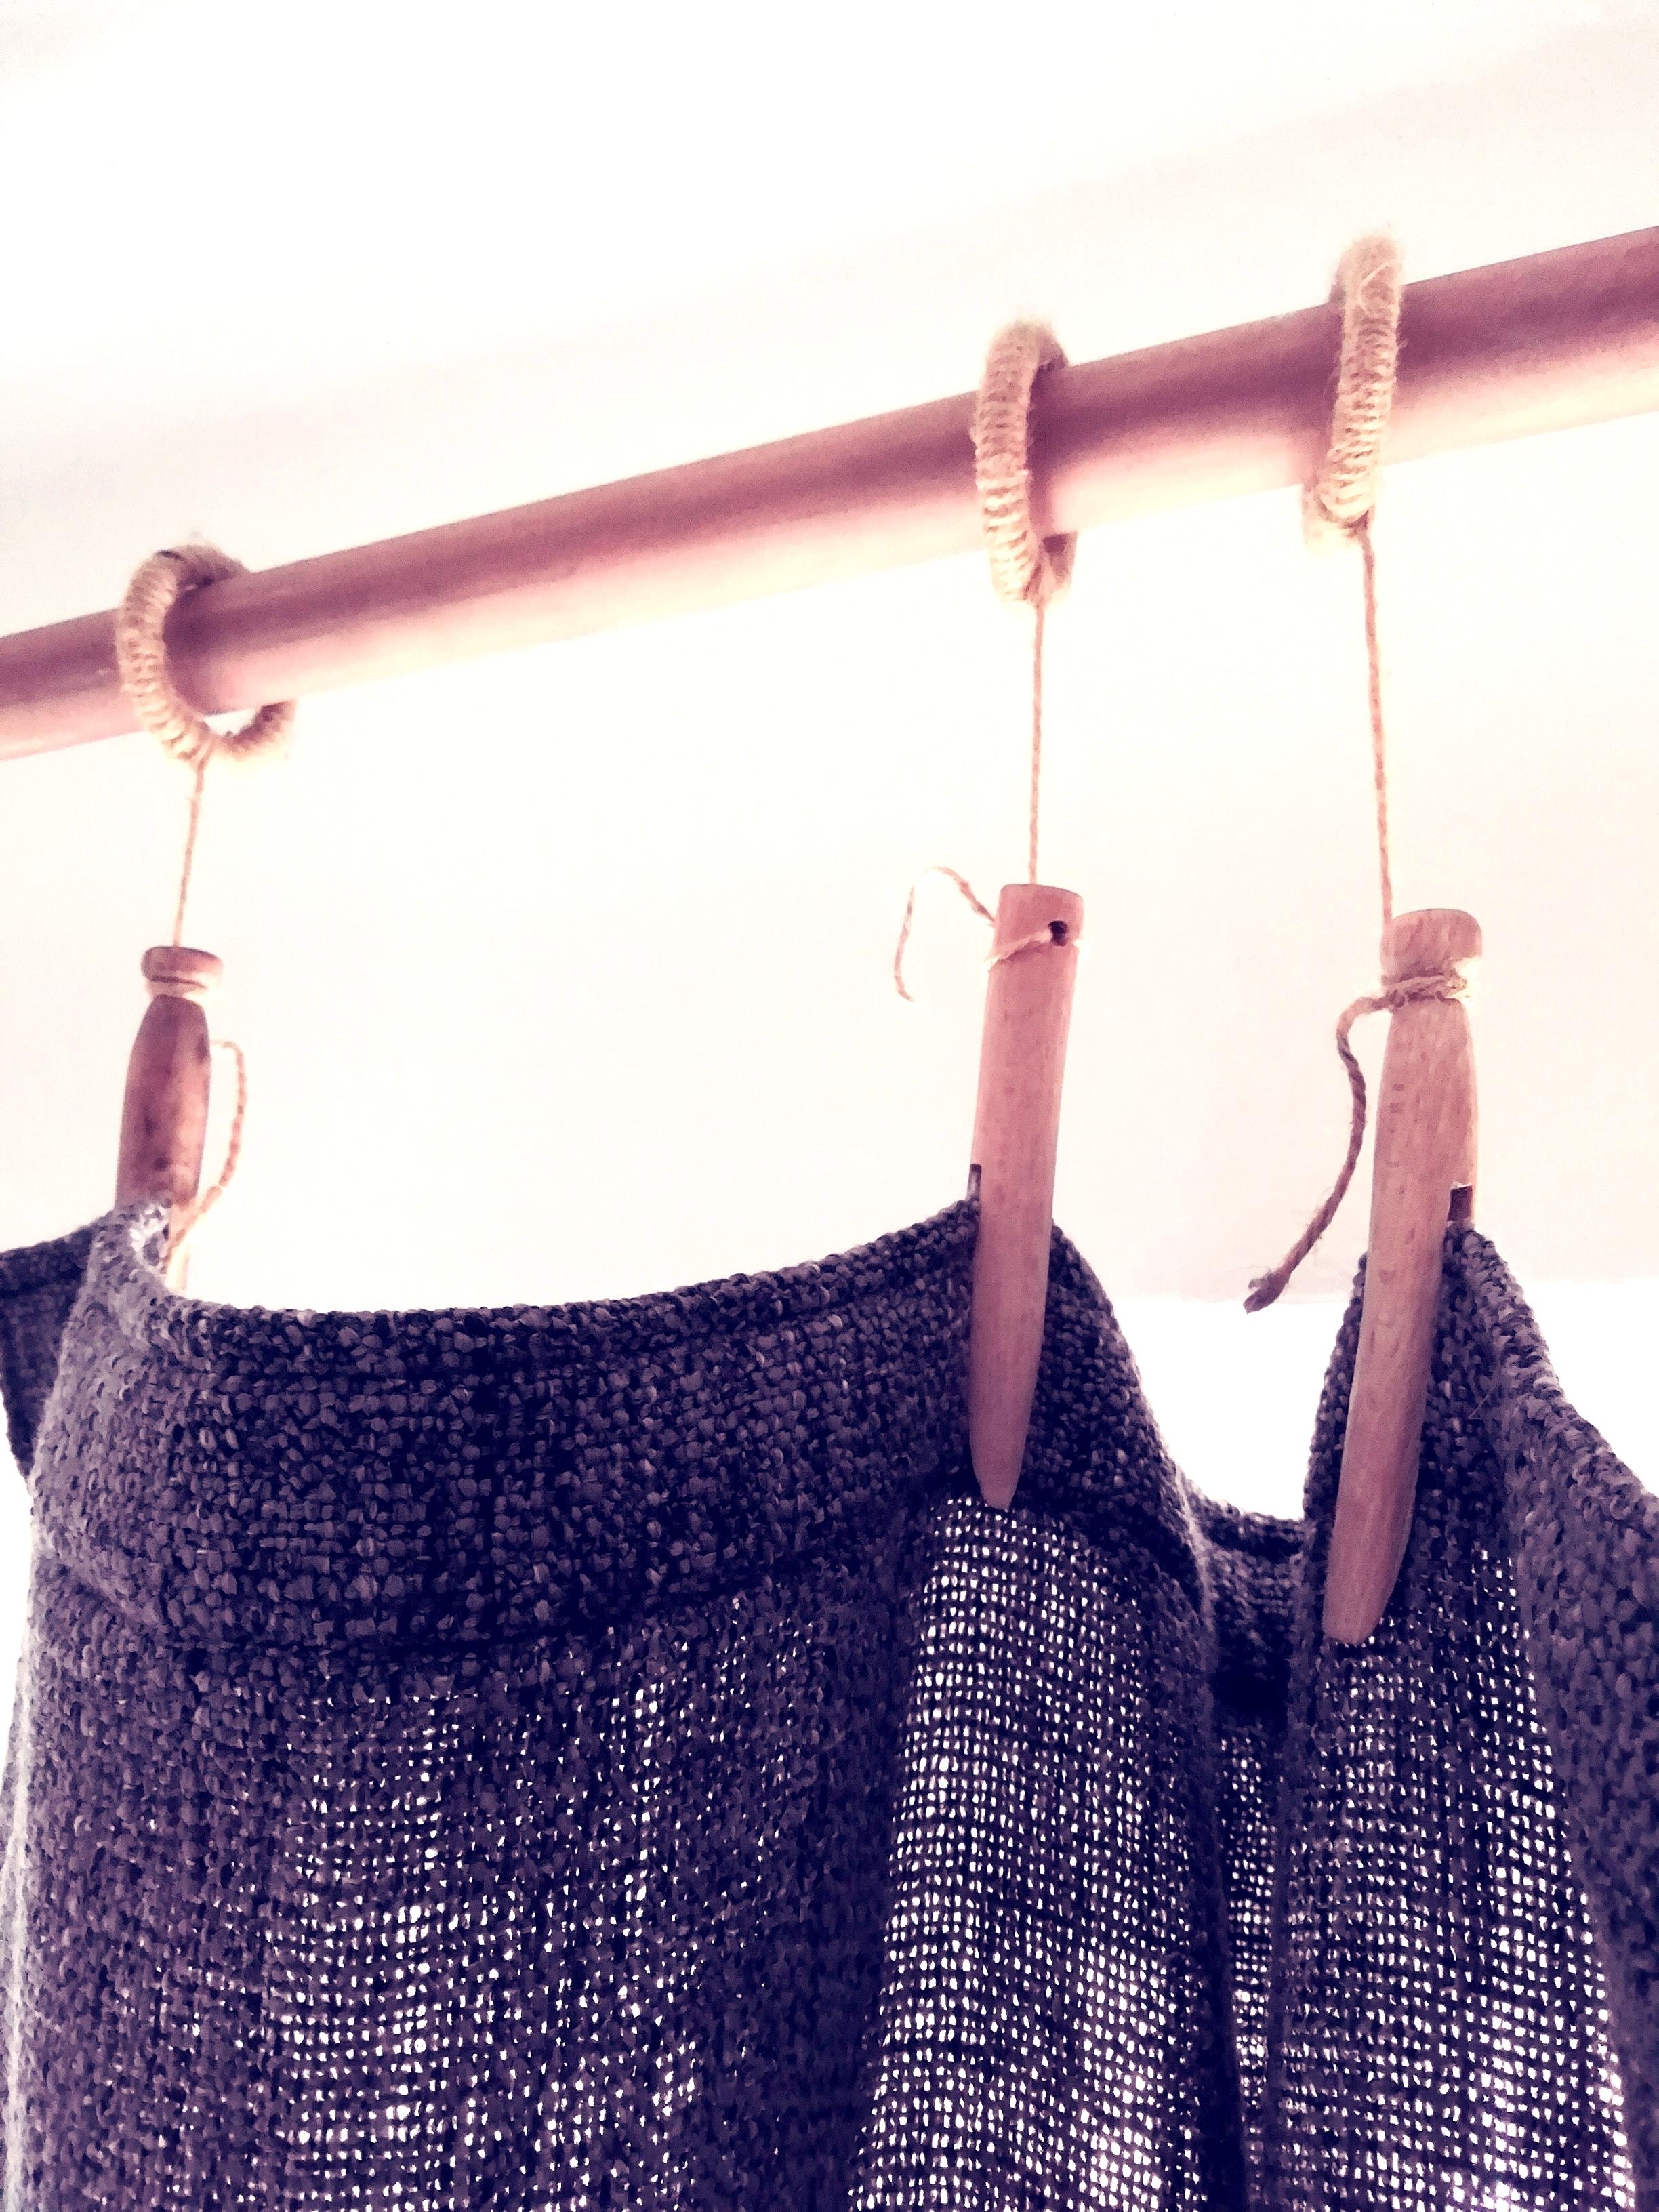 Mal wieder ein DIY. Wie auf der #Wäscheleine hängt der Vorhang locker luftig.
#Vorhang #Gardine 
#diy #upcycling 